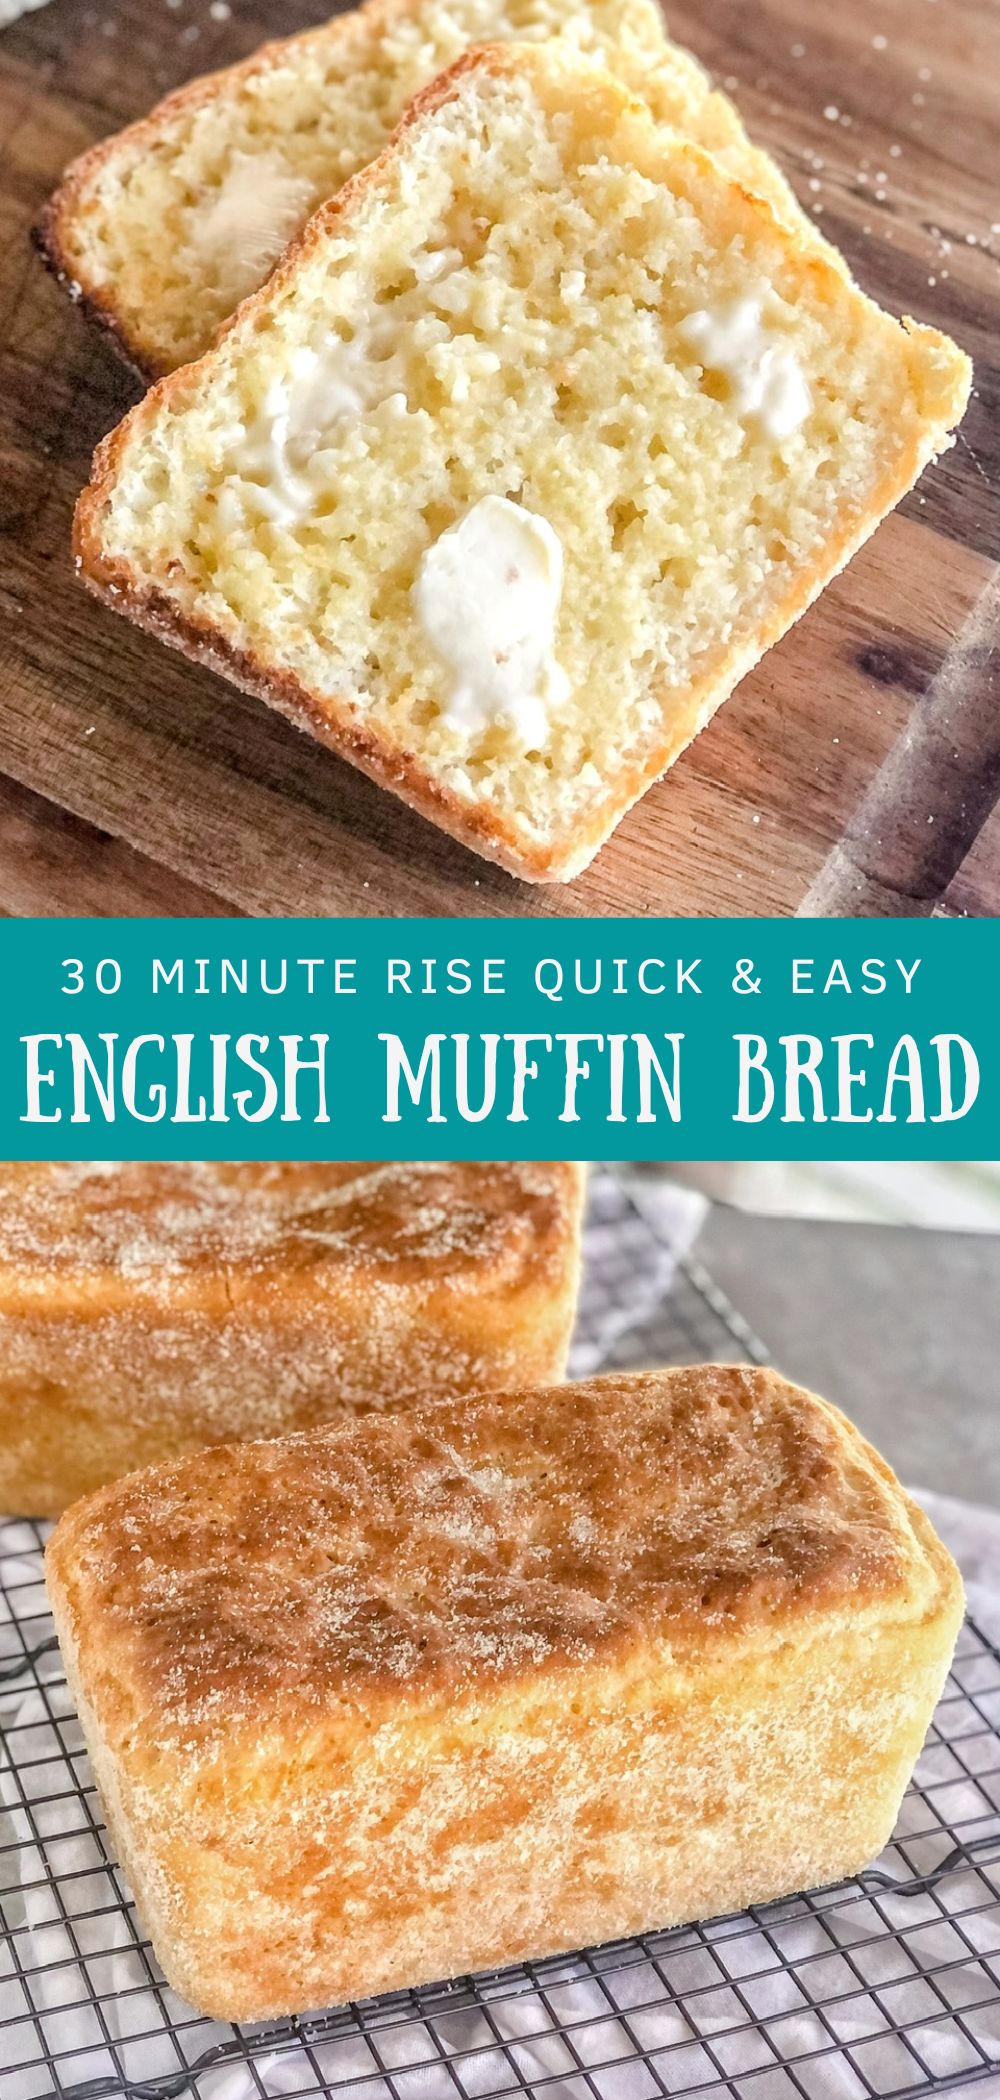 English muffin bread